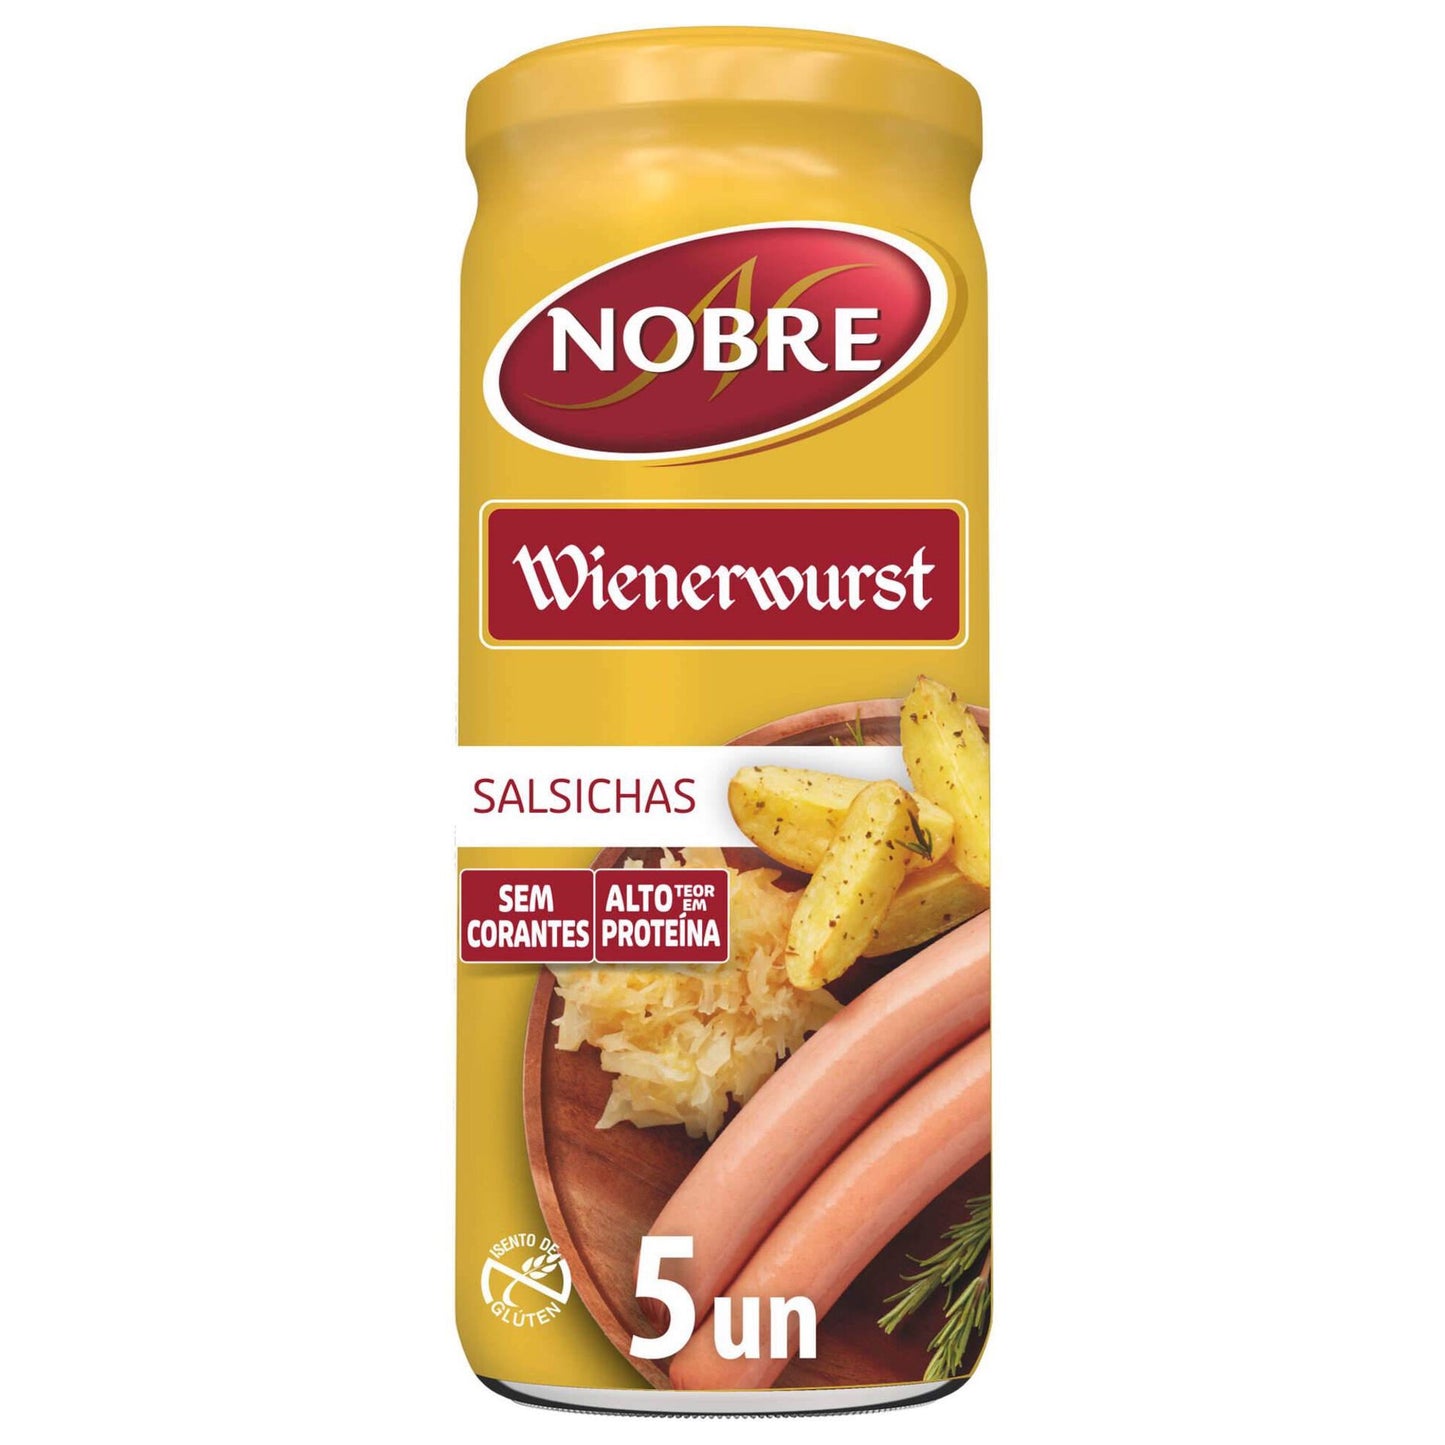 Salsichas Wienerwurst Garrafa 5 unidades Noble 440g